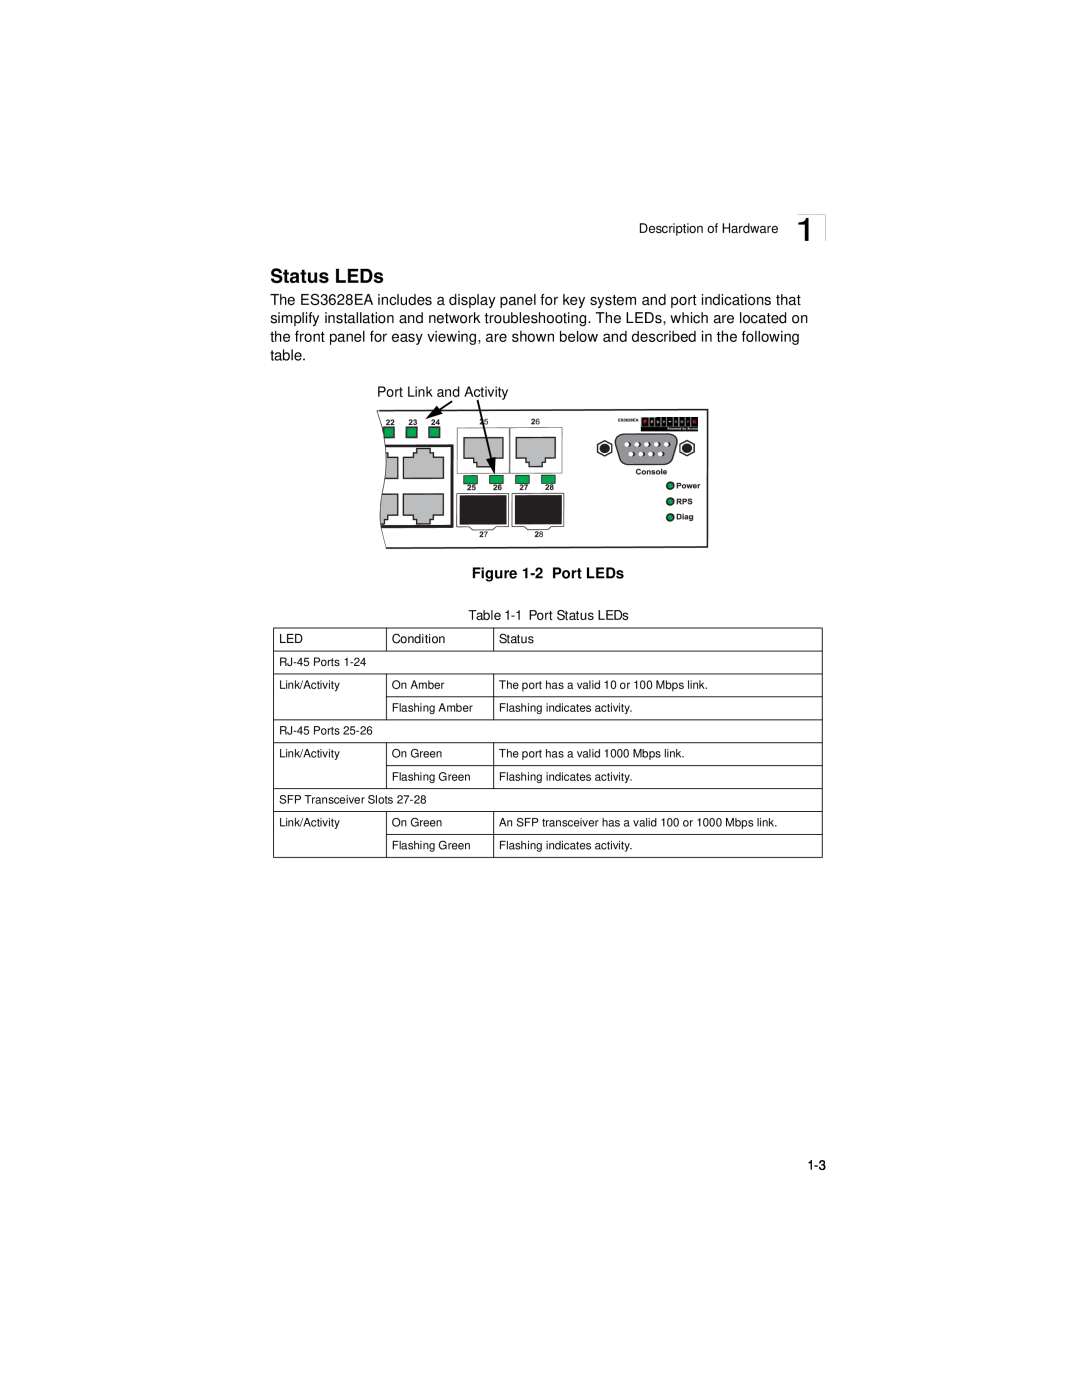 Accton Technology ES3628EA manual 2 Port LEDs -1 Port Status LEDs, Condition 